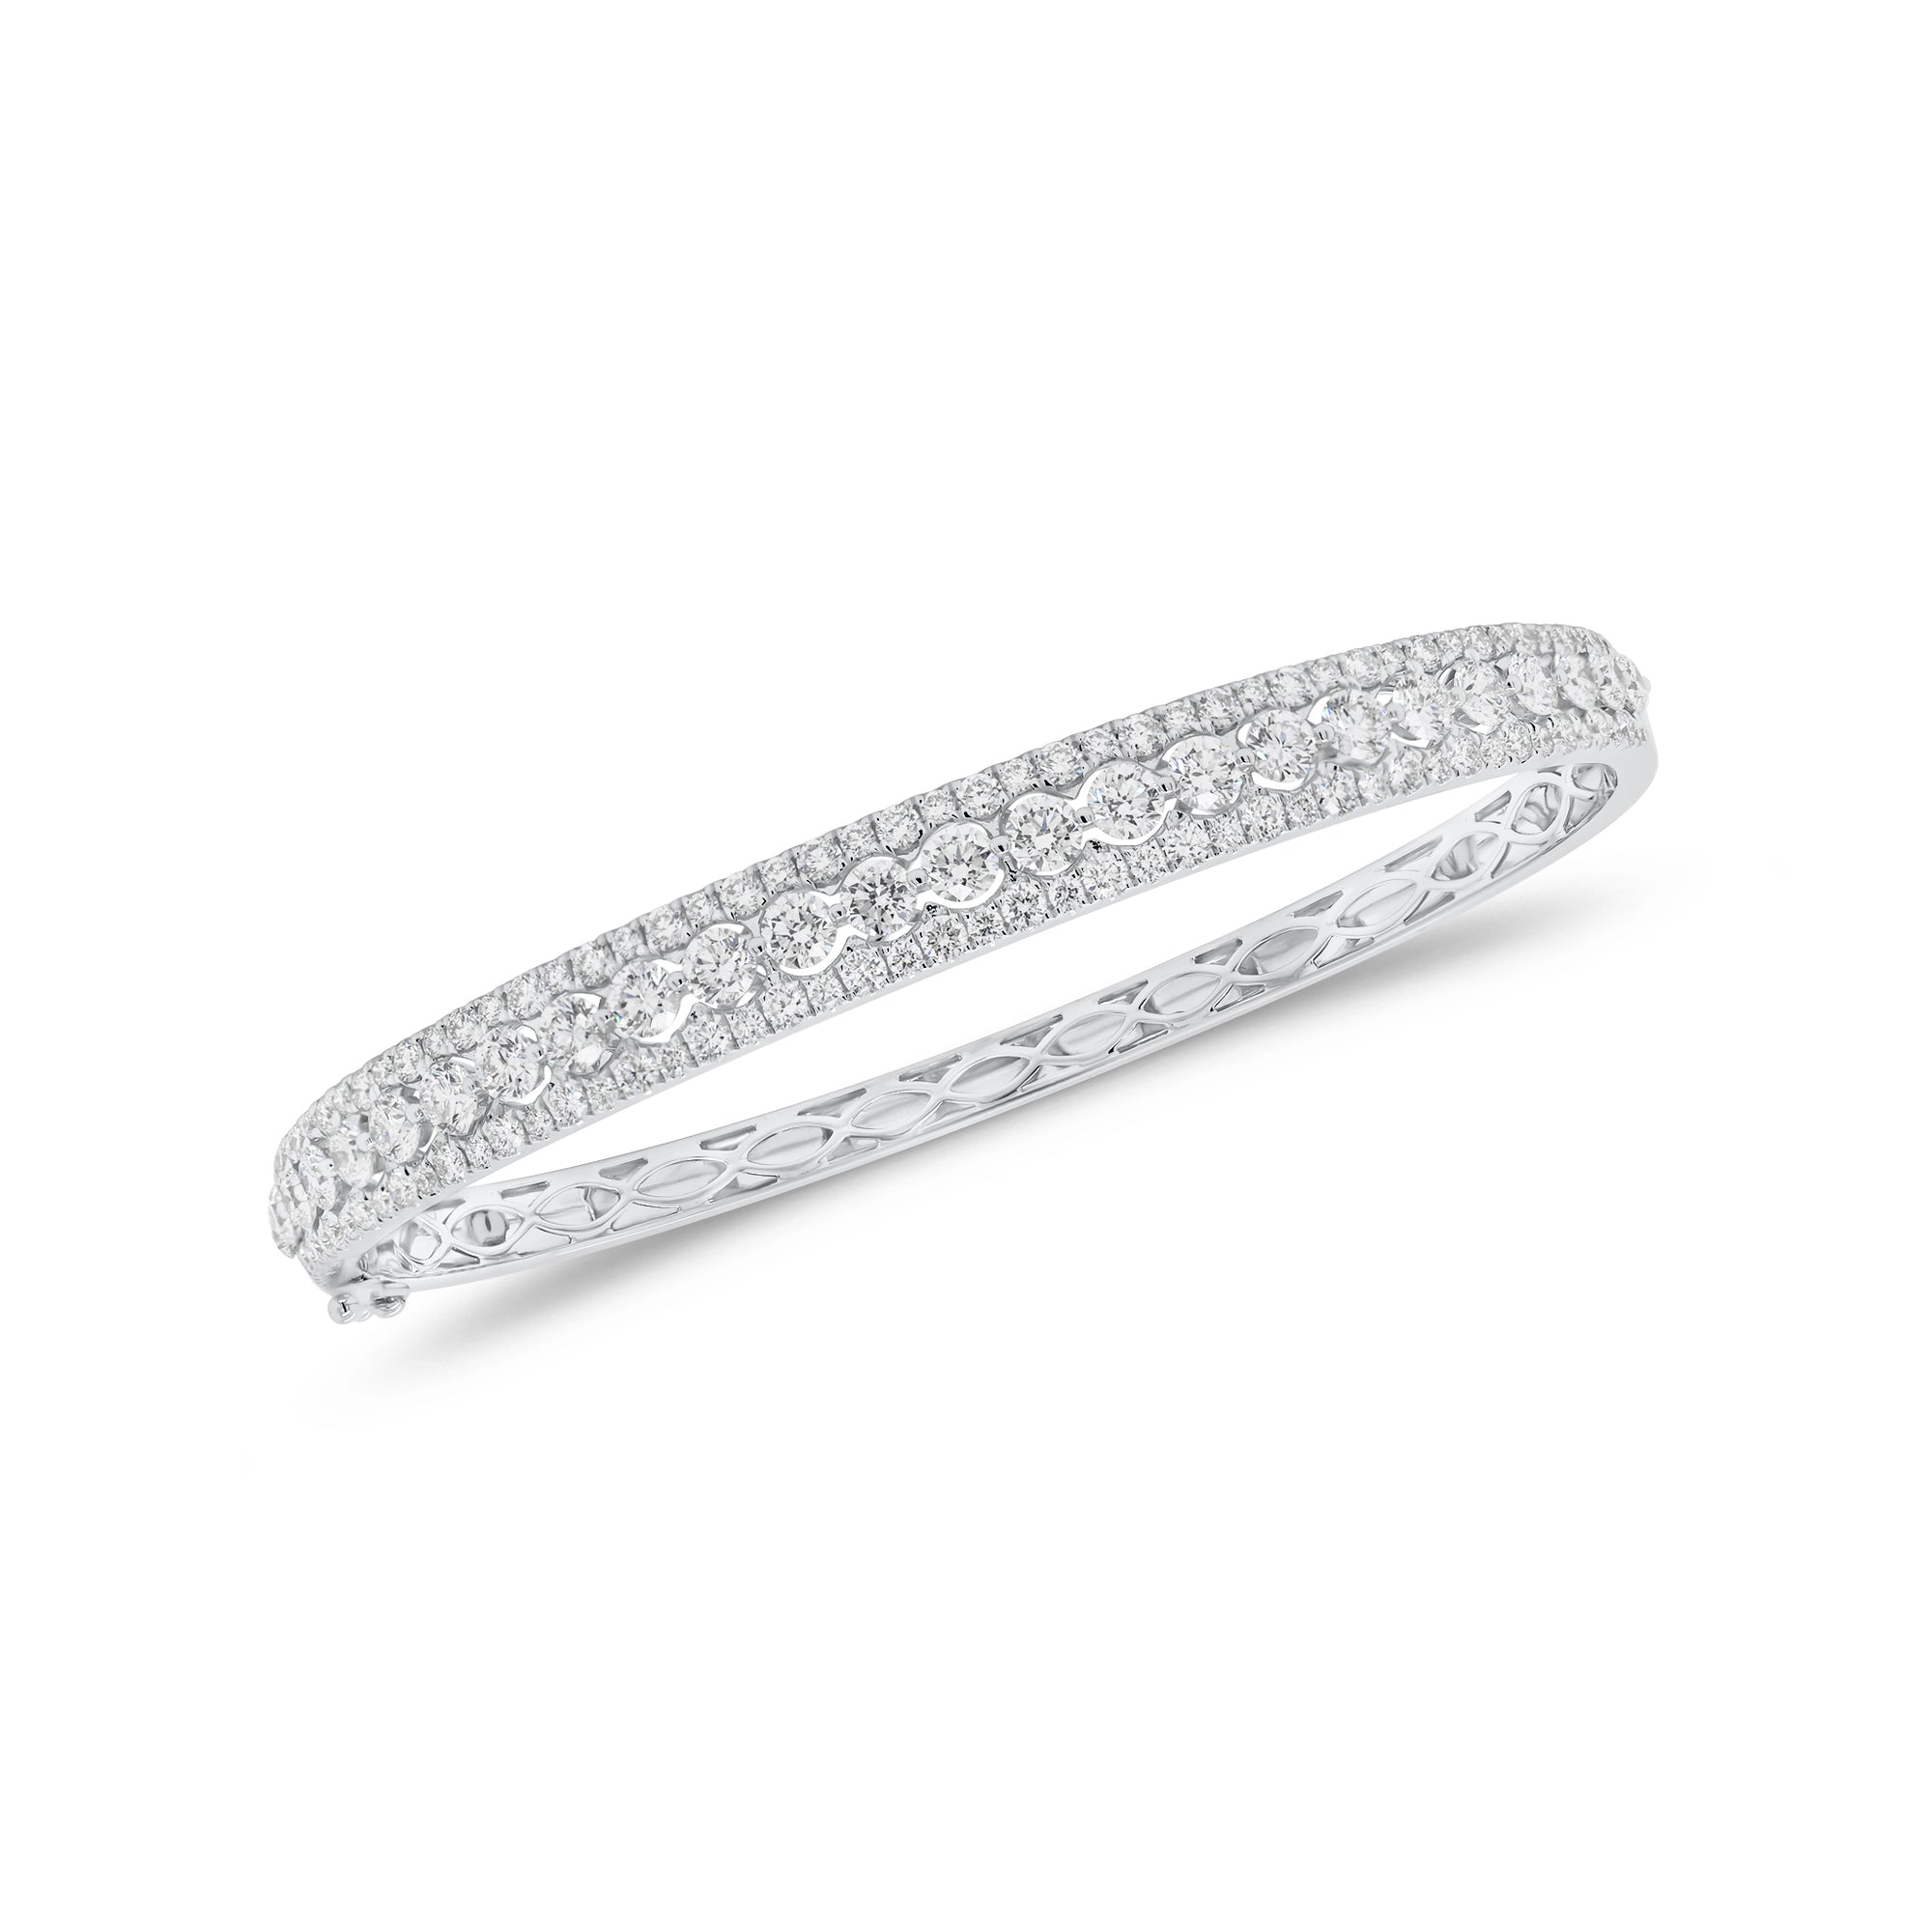 Diamond Pattern Bangle Bracelet - 18K gold weighing 13.22 grams  - 127 round diamonds weighing 3.57 carats